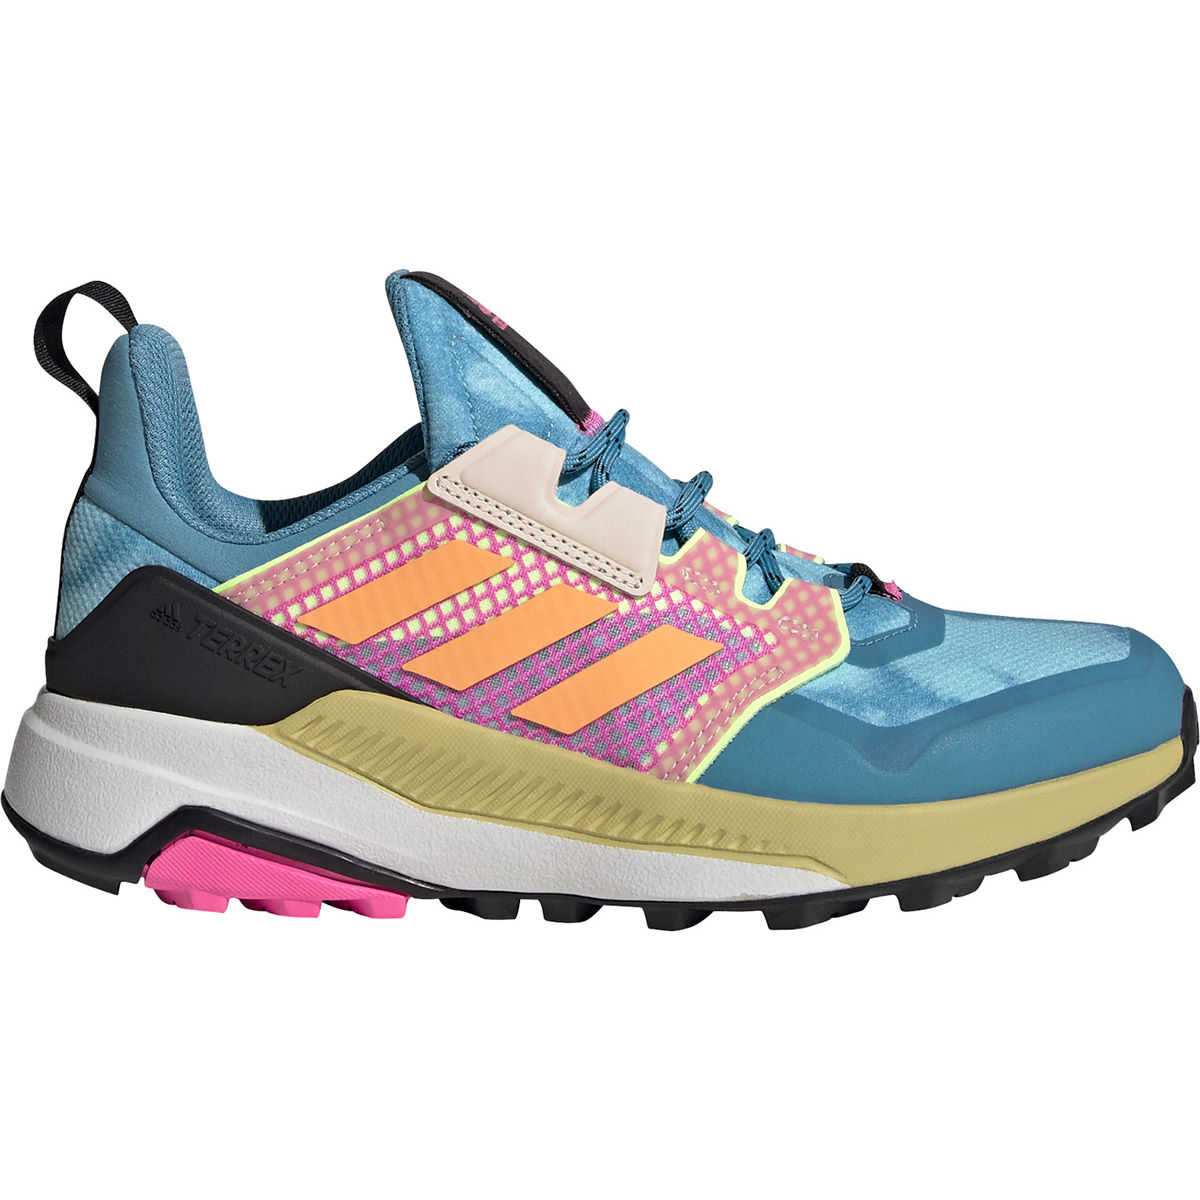 Zapatillas de senderismo adidas Terrex Trailmaker (azul/rosa U) - Zapatillas